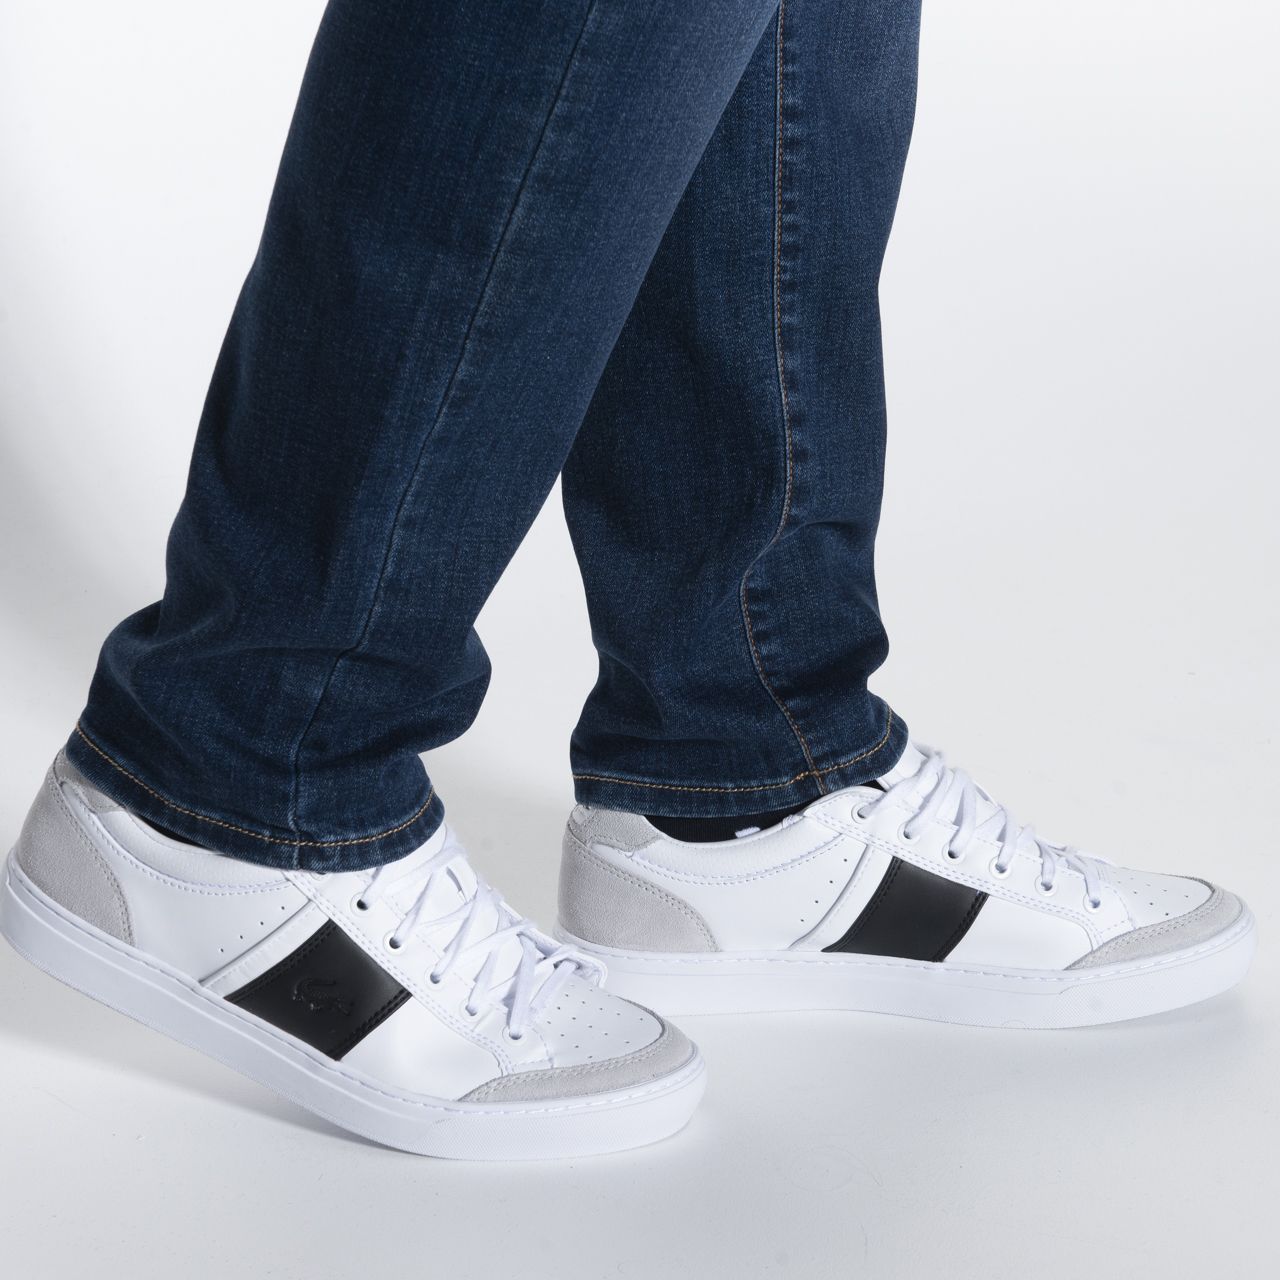 Pierre Cardin Lyon Future Flex Jeans | Shop nu - Only for Men